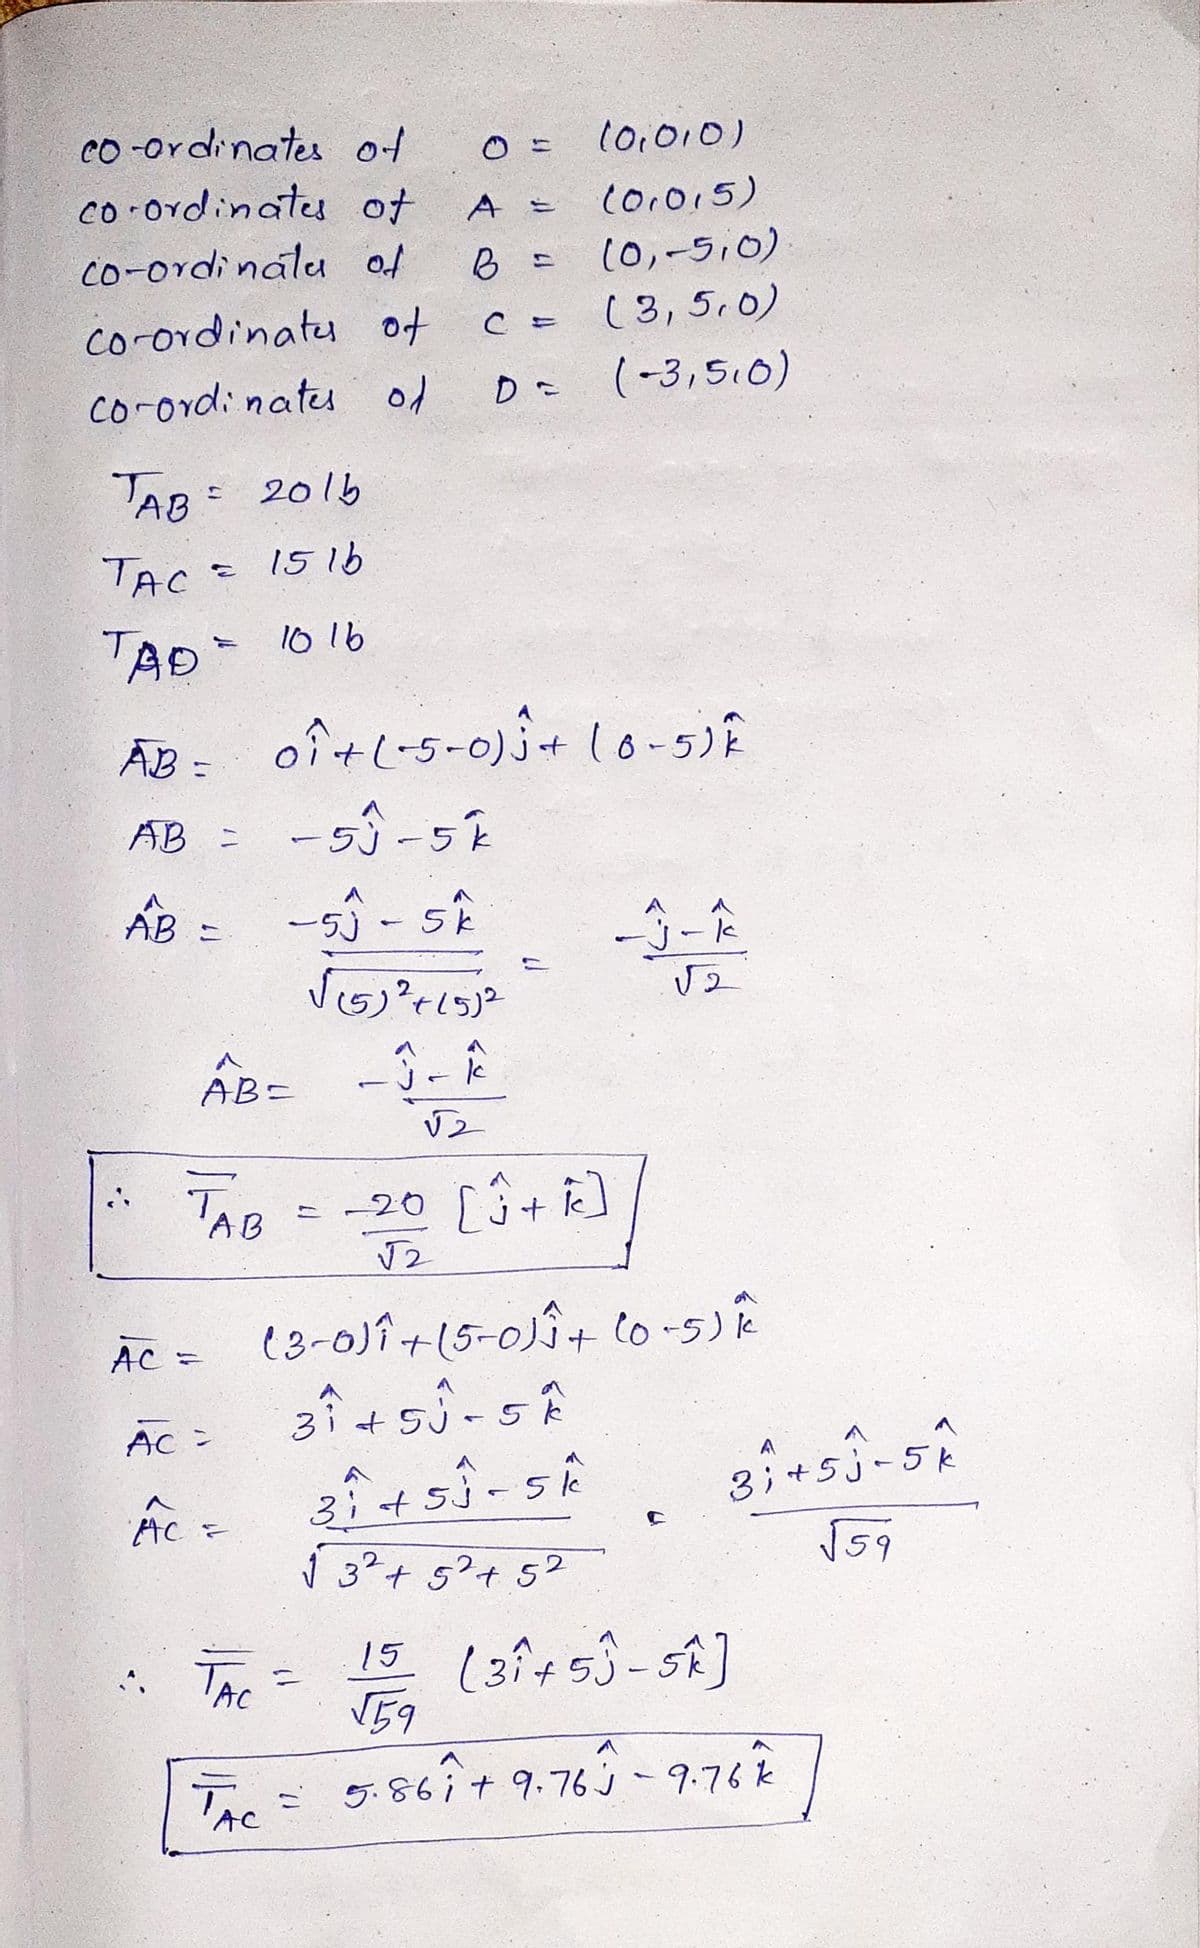 co -ordinates of
(0,010)
co ordinatu of
co-ordinalu of
Co.015)
(0,-5,0)
(3,5,0)
co-ordinatu of
D (-3,5,0)
co-ord: natu of
AB: 2015
TAC -
1516
TAD
10 16
ĀB = oî+l-5-0) j+ lo-5)E
AB =
AB =
ー55 -5k
j-k
AB-
'AB
= -20 [3+ ]
AC =
e3-0)î+(5-0Î+ lo-5)R
3i+5j-5k
AC =
A
3:+5j-5k
ý 3²+ 5°+ 5?
3;
* The =
15 (3i+53-SA]
V59
The
TAC
86it9.76j
9.76k
